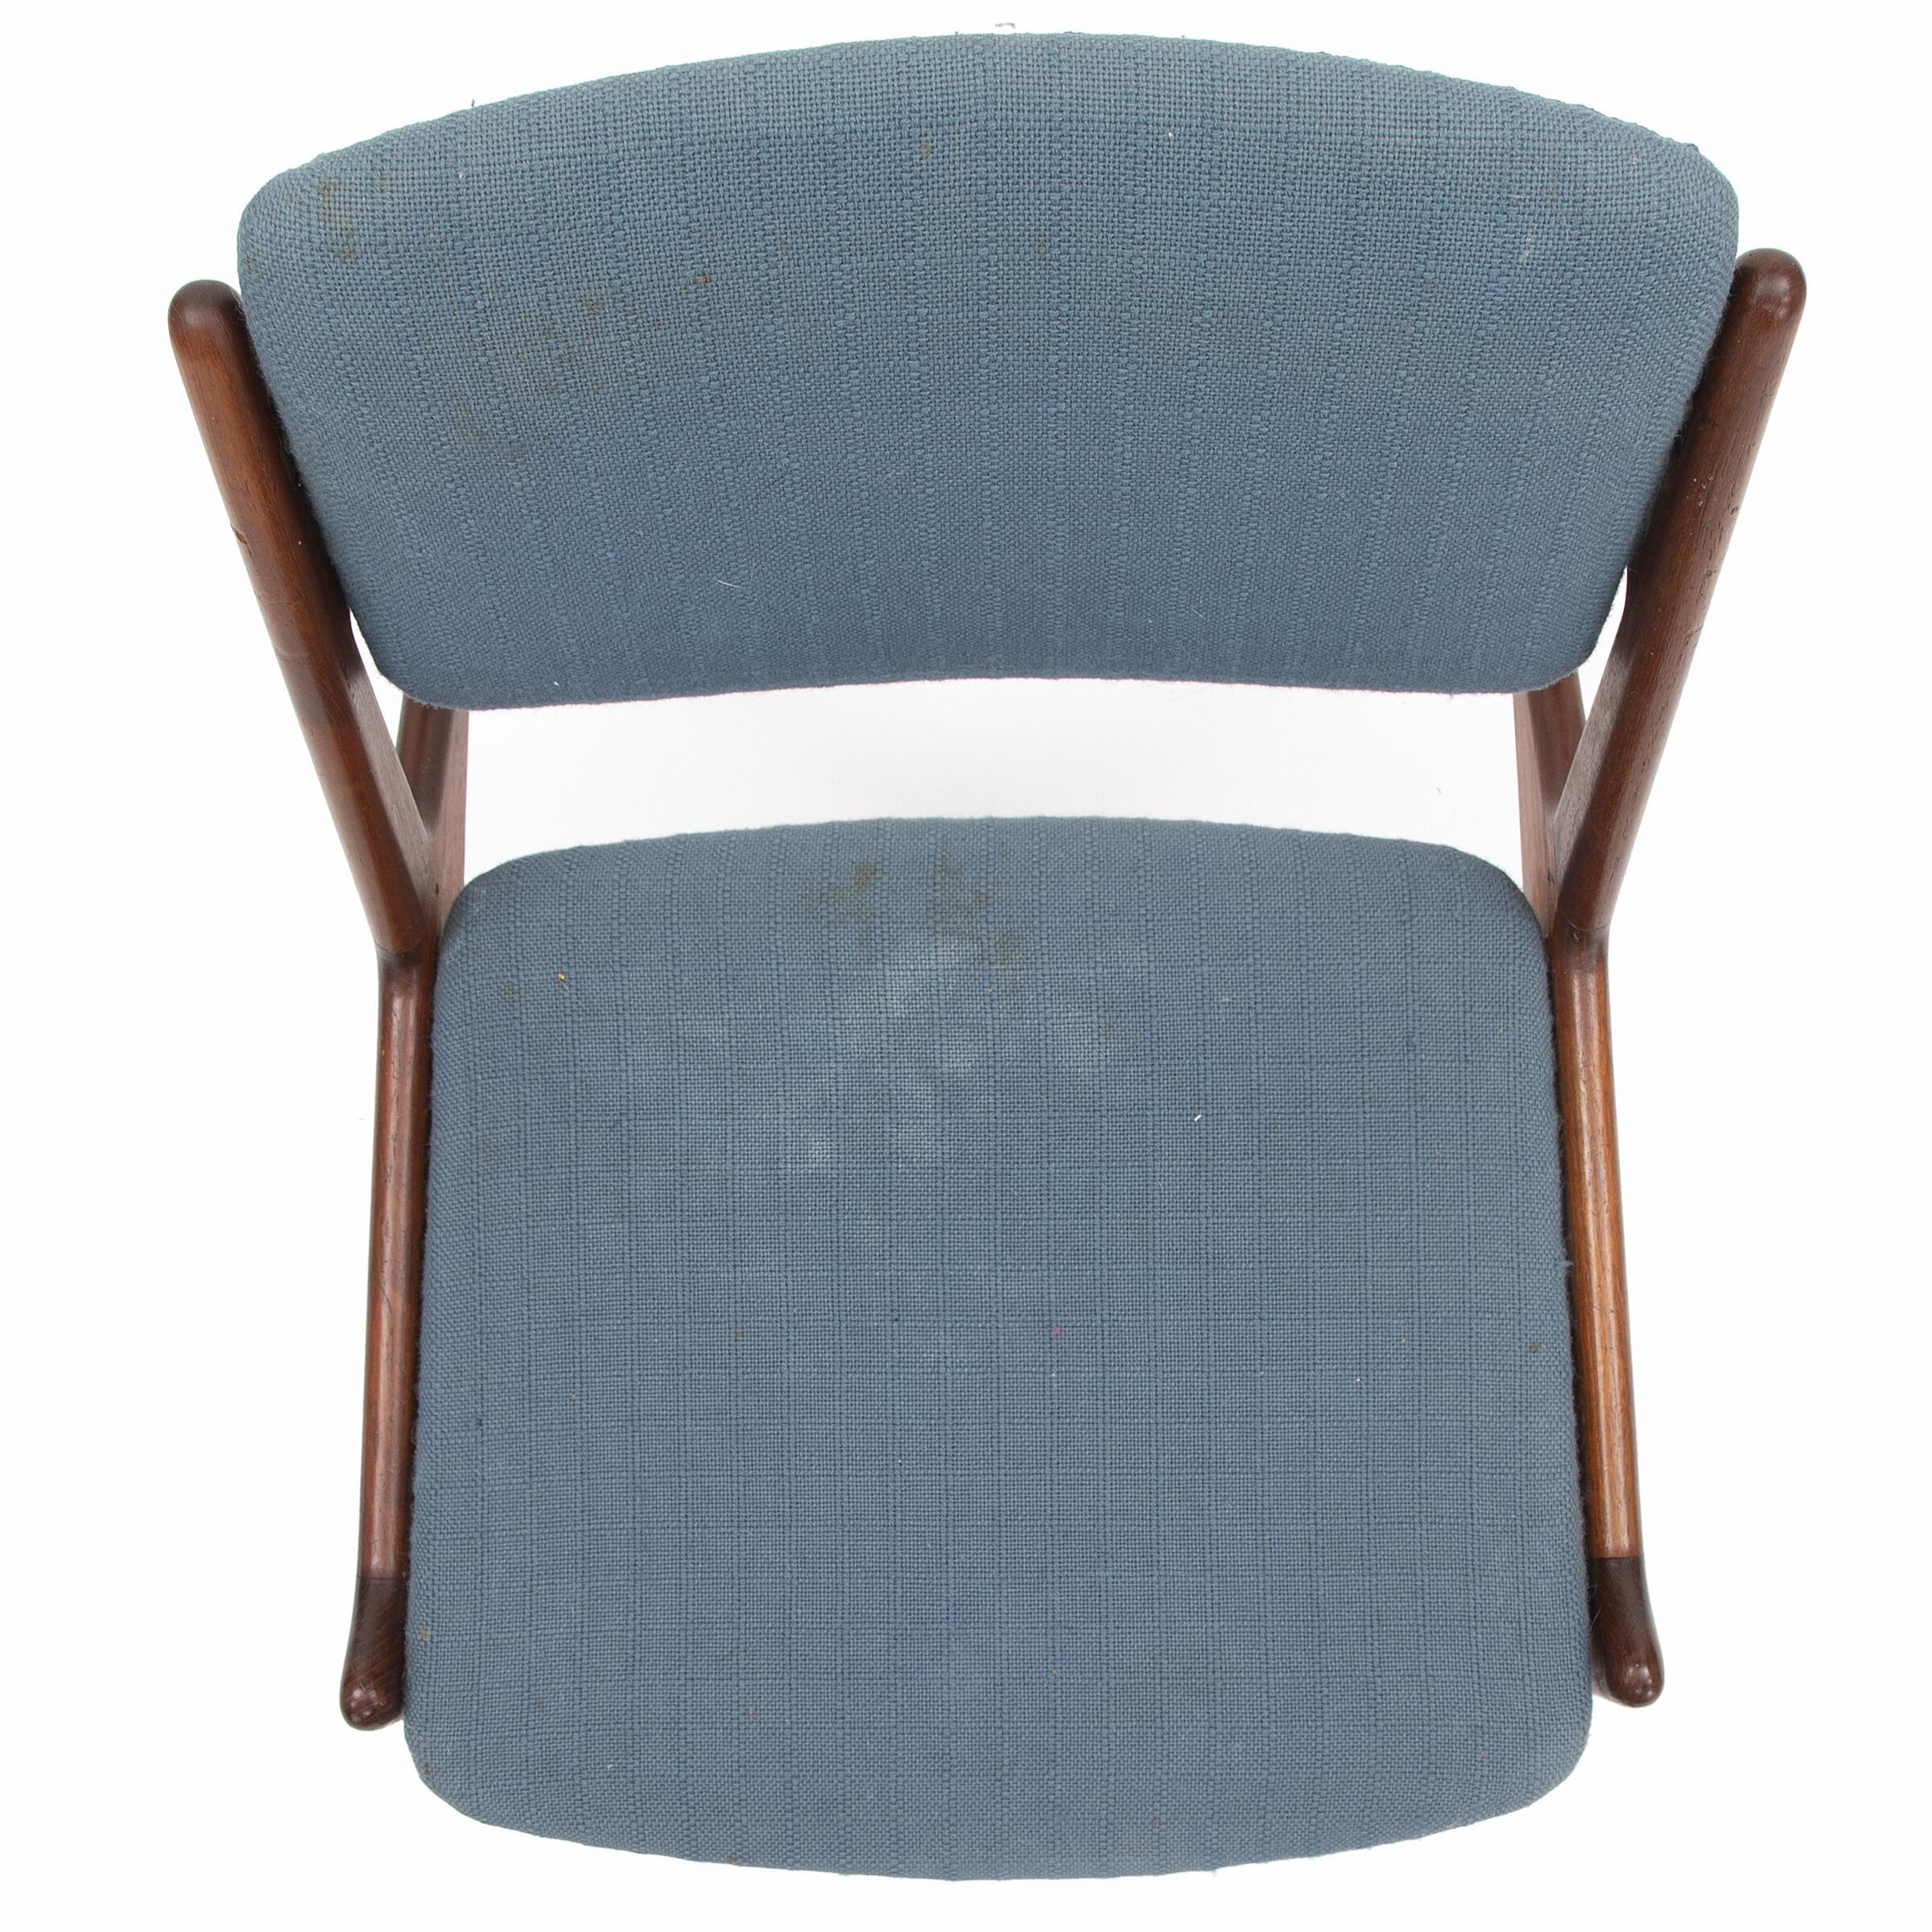 Un ensemble rare de quatre chaises de salle à manger par Arne Vodder, modèle Ella.
Fabriqué au Danemark, dans les années 1950, par Asbjørn-Mobler.
Ils présentent une forme unique avec un dossier organique et des pieds en acier inoxydable. 
bois